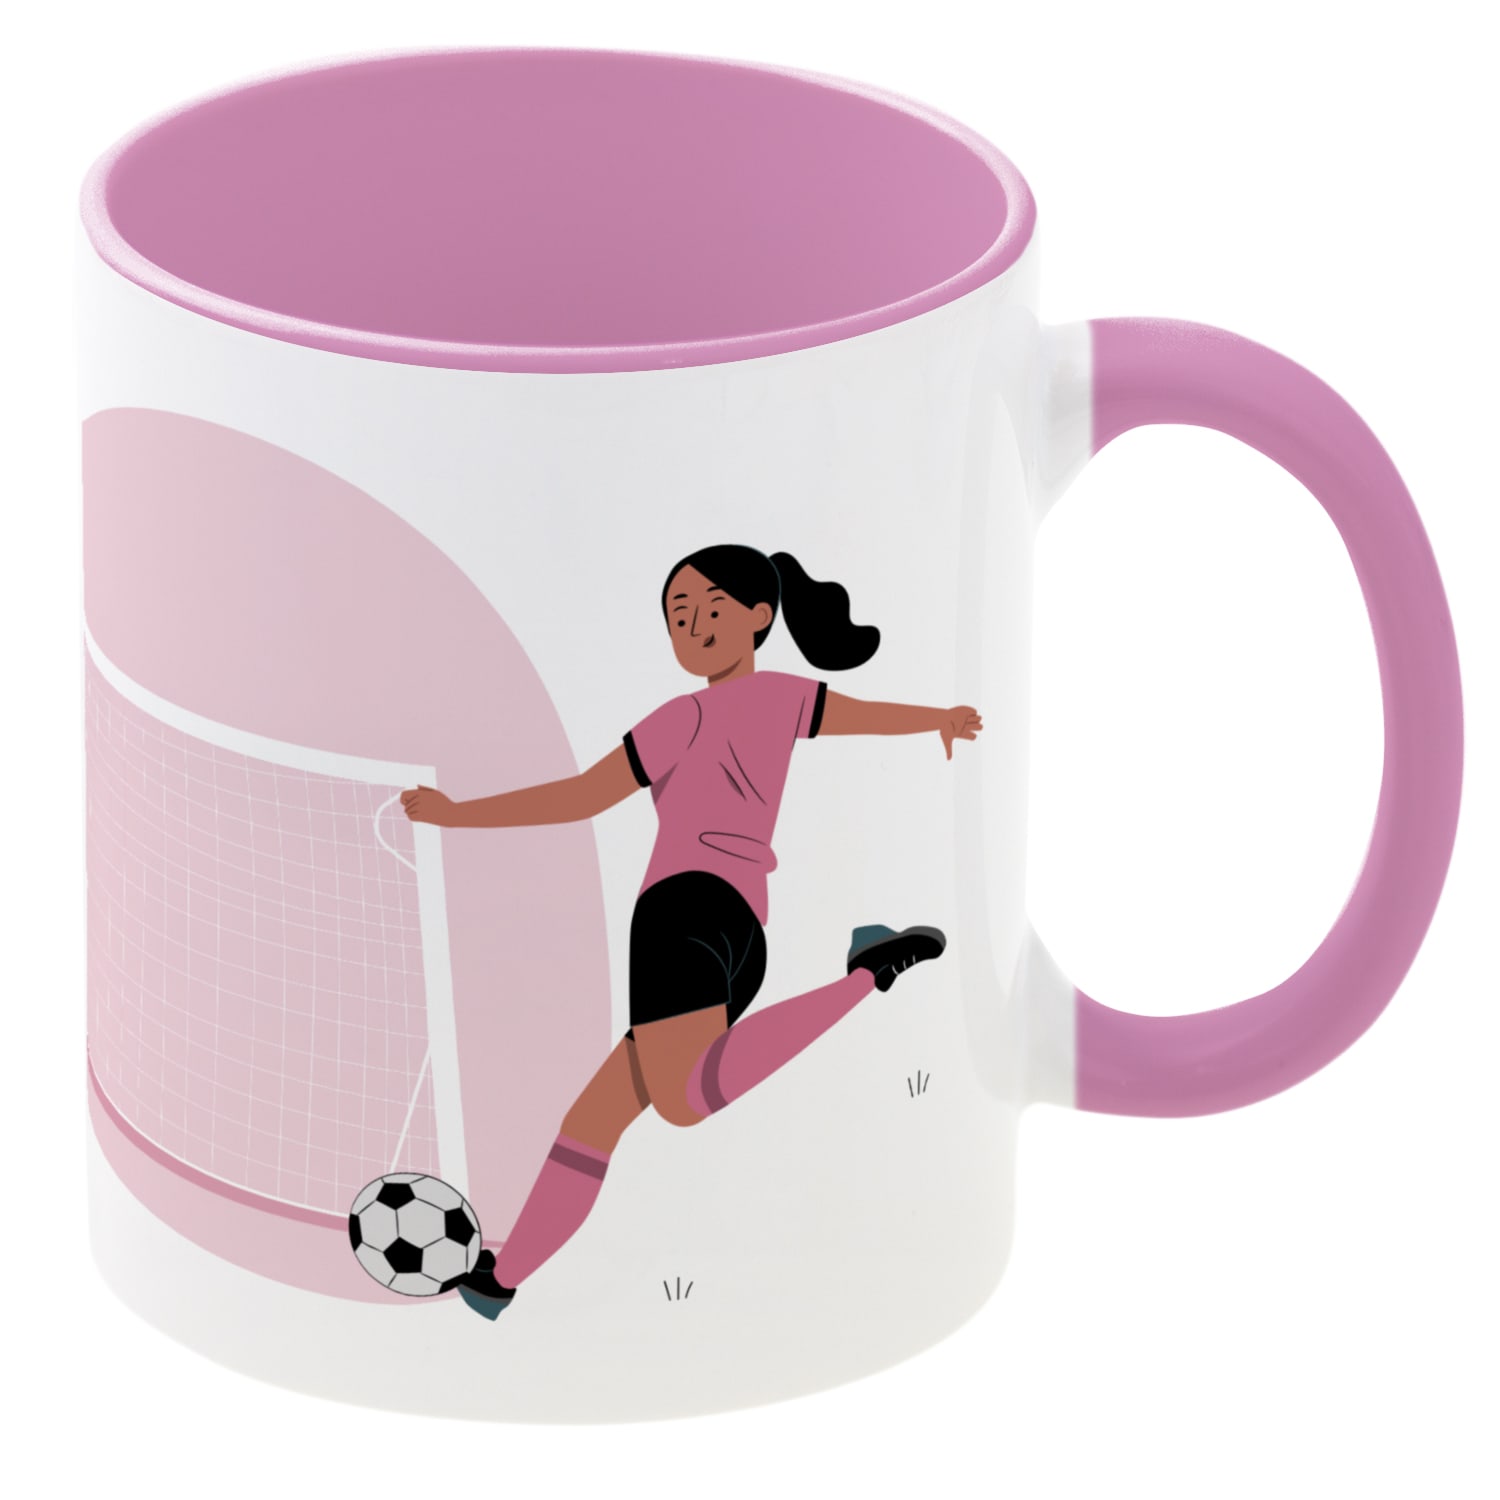 Tasse - Die besten Fußballer